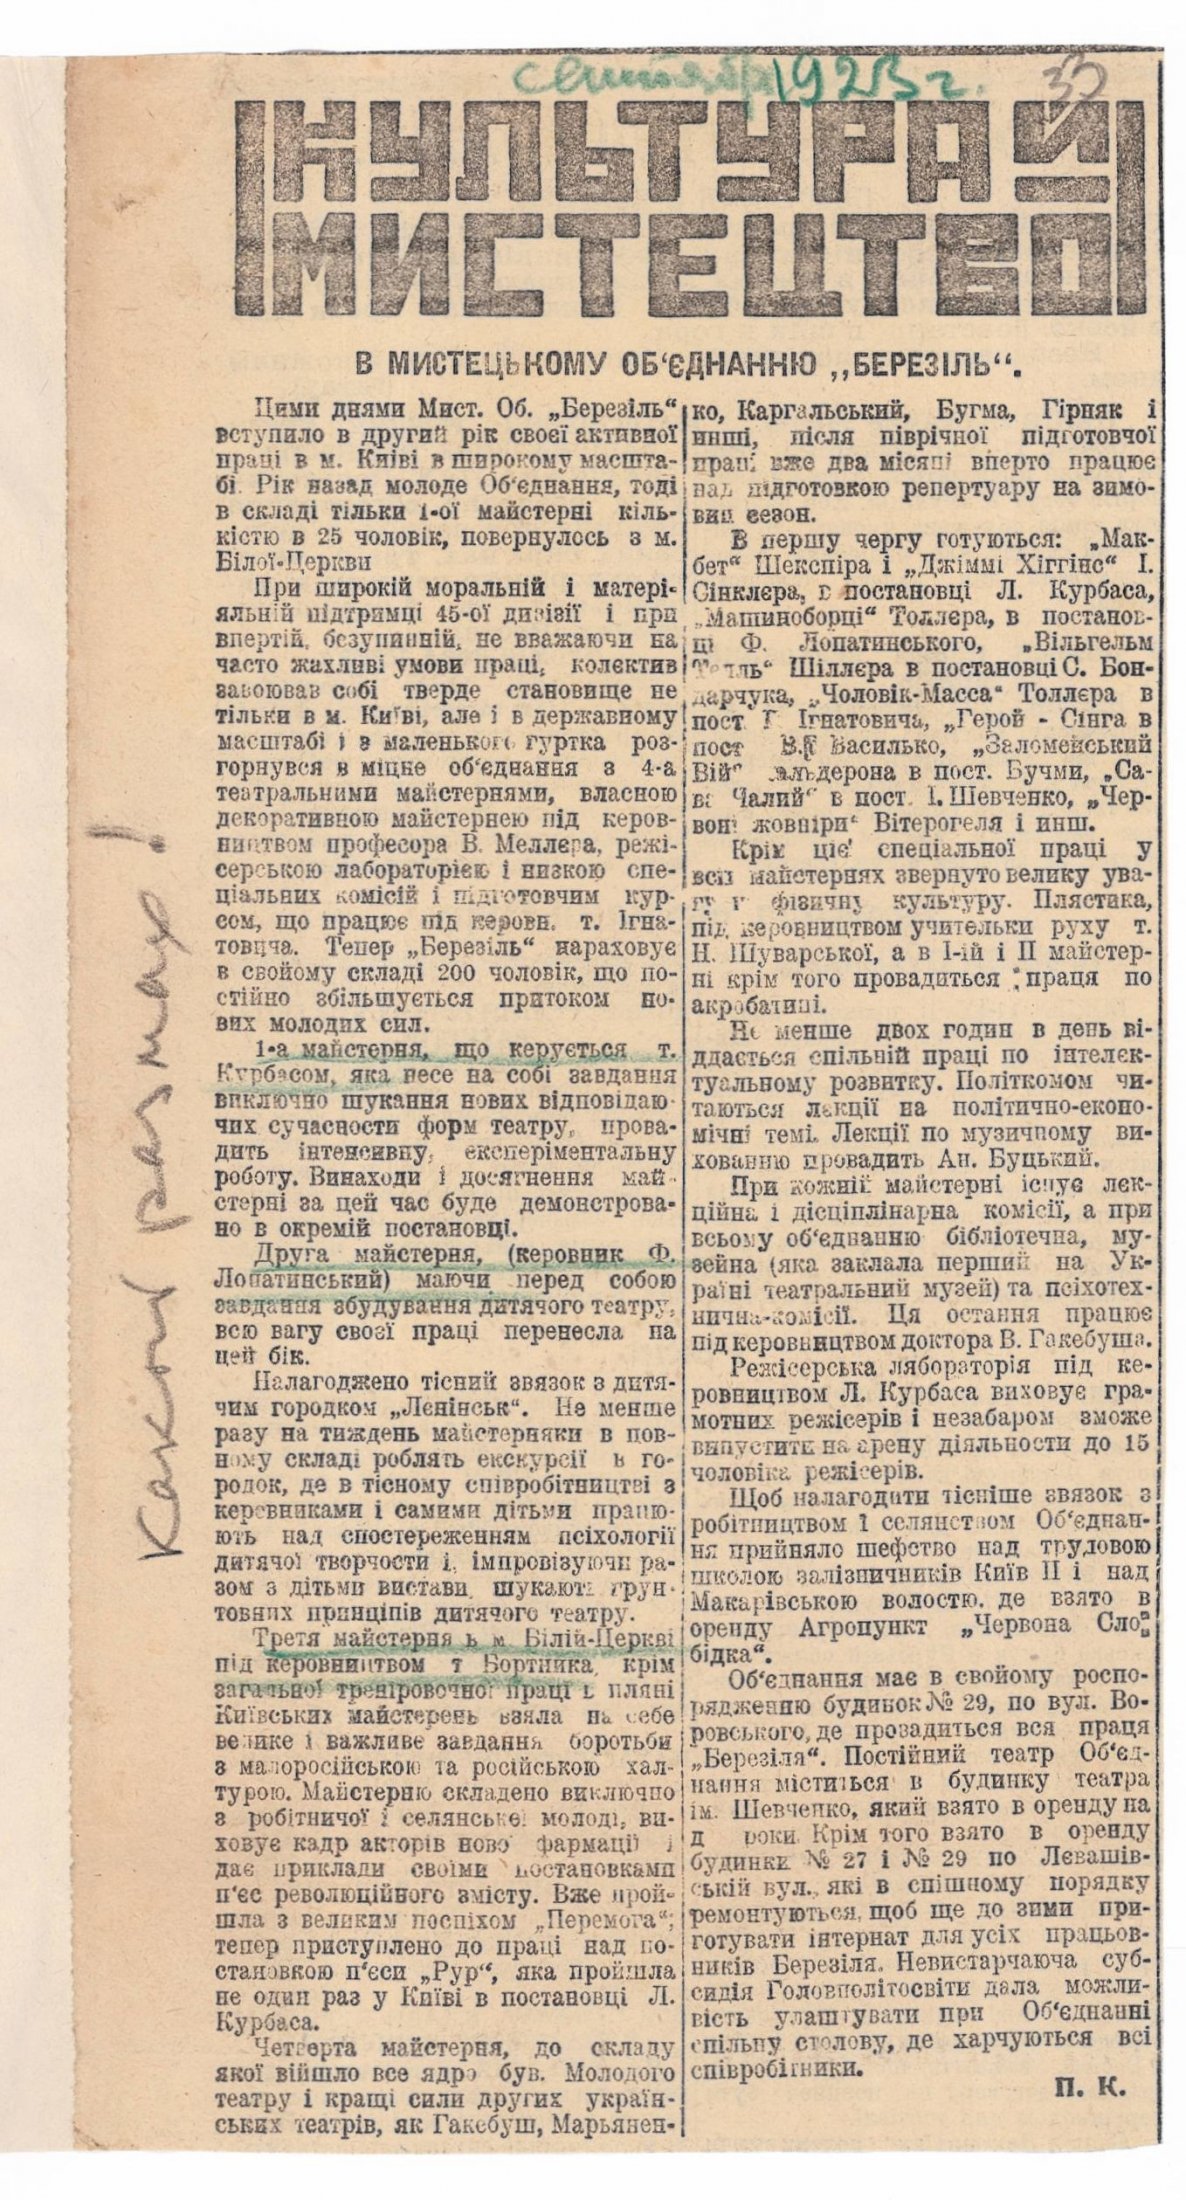 Стаття про діяльність мистецького об’єднання «Березіль» в газеті «Більшовик». Вересень 1923 р.